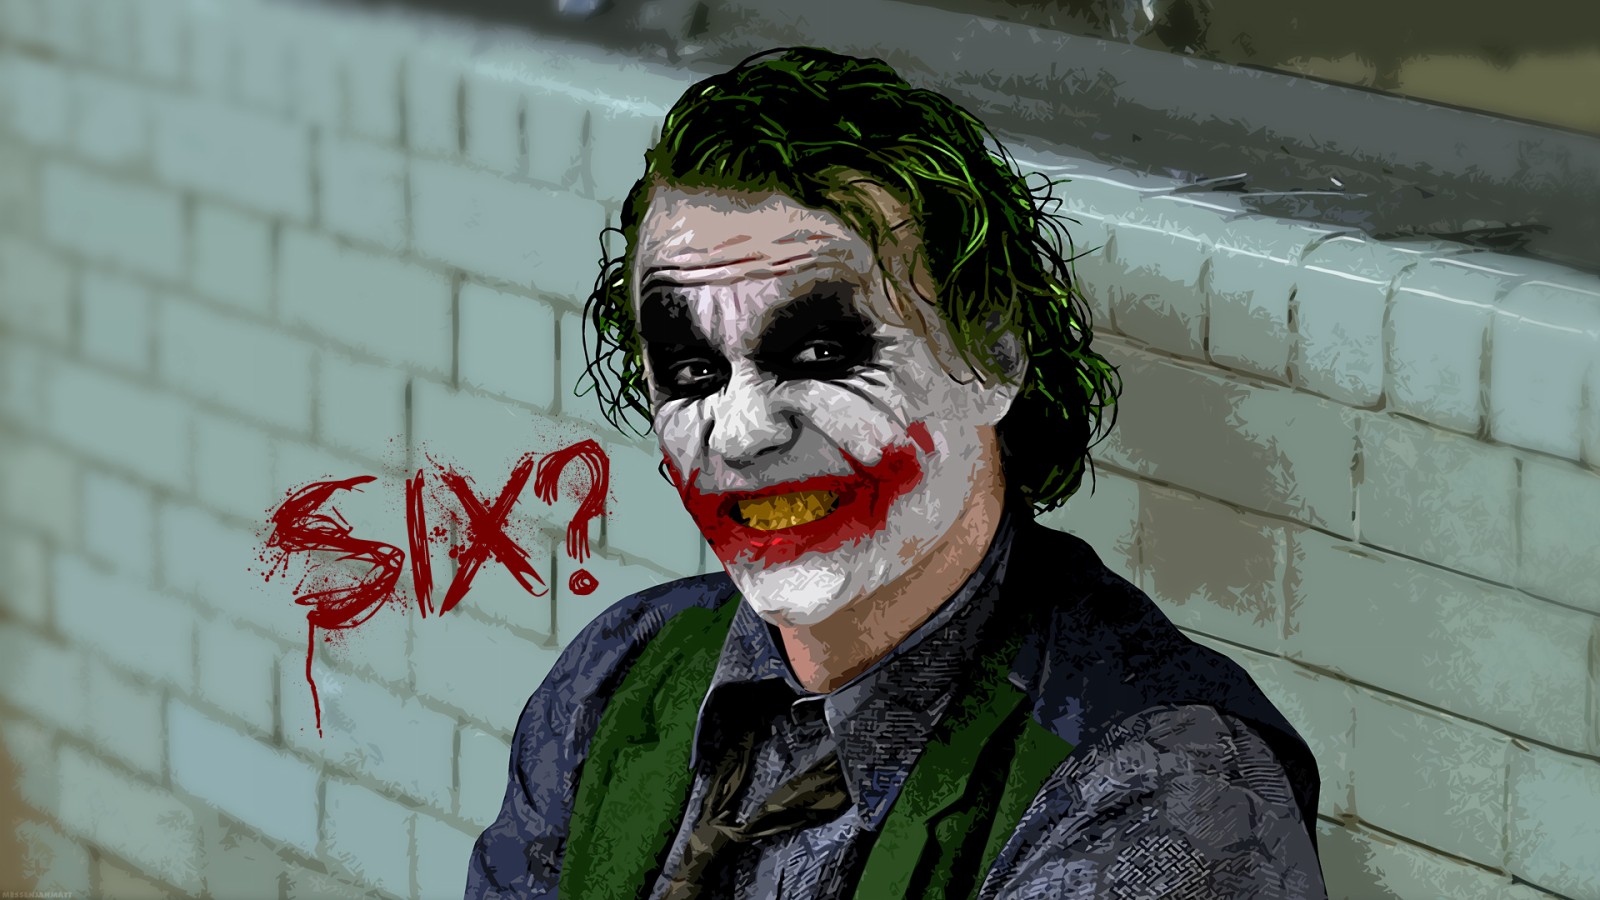 Joker Batman Dark Knight HD Wallpaper of Movie   hdwallpaper2013com 1600x900